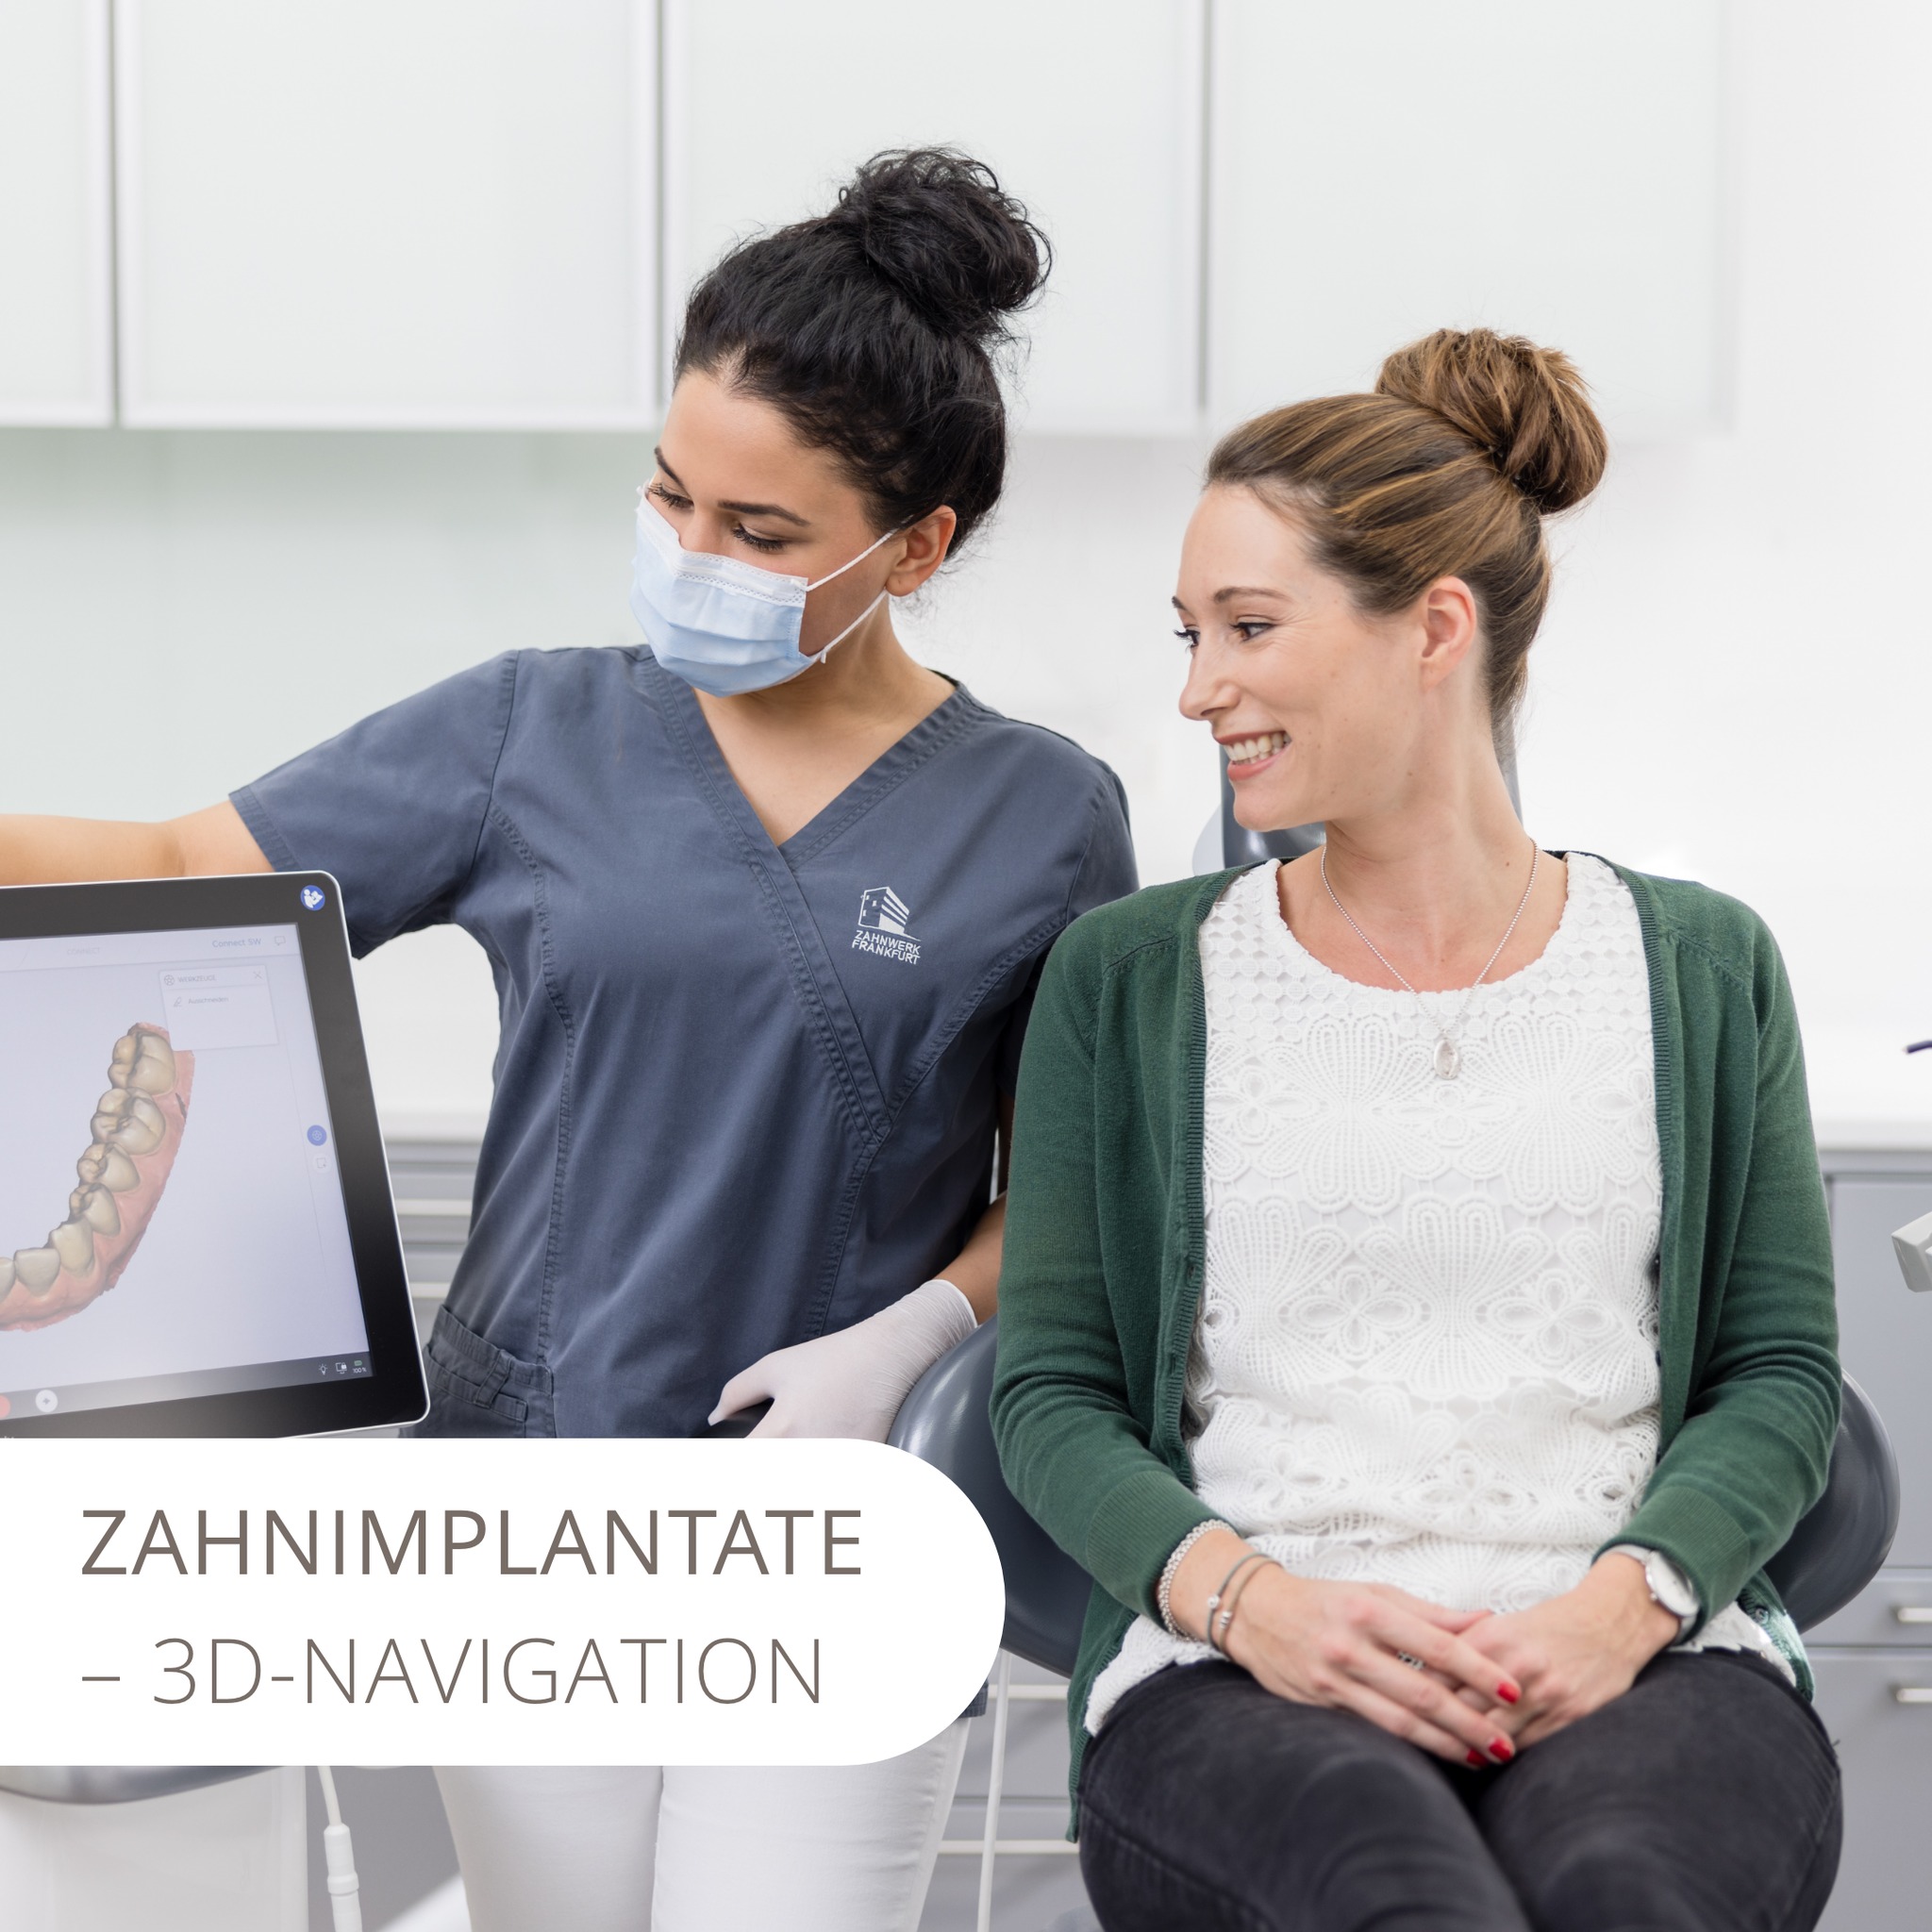 Innovative Zahntechnik findest Du im #Zahnwerk. So findet die Implantat-Planung bei uns immer mittels hochmoderner 3-D Navigation statt für eine exakte Vorbereitung und Positionierung Deines Implantates . Klingt spannend? Gerne erklären wir Dir die einzelnen Schritte ausführlich im Rahmen Deiner Implantat-Planung. Denn bei uns wirst Du immer über alles informiert. Schließlich sind wir eine Praxis von Menschen für Menschen. #dvt #3D #implantate #implantat #durchführung #zahnwerk #frankfurt #zahntechnik #drittezähne